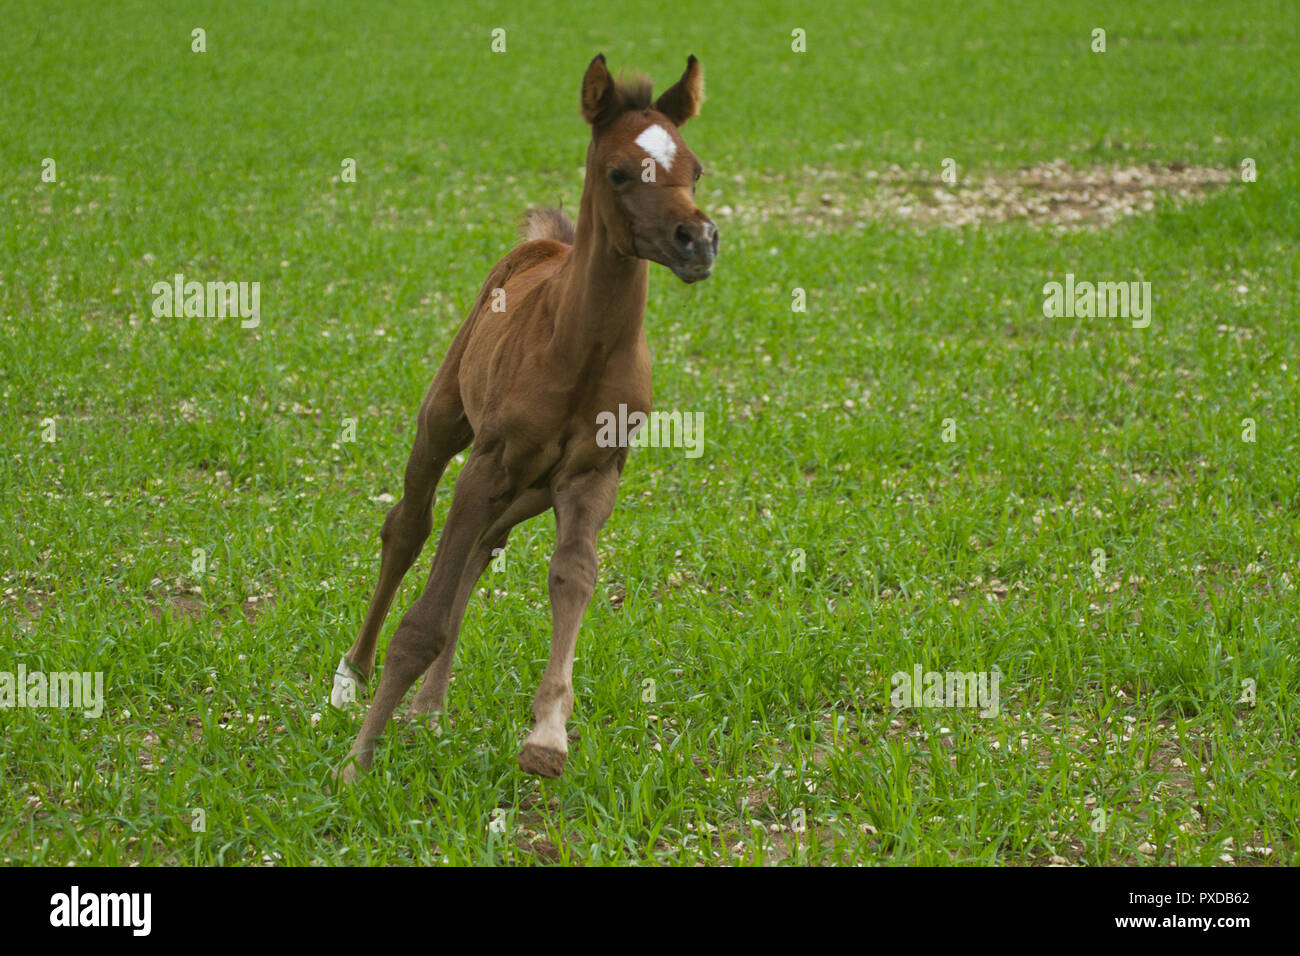 Arabian horse Foal Stock Photo